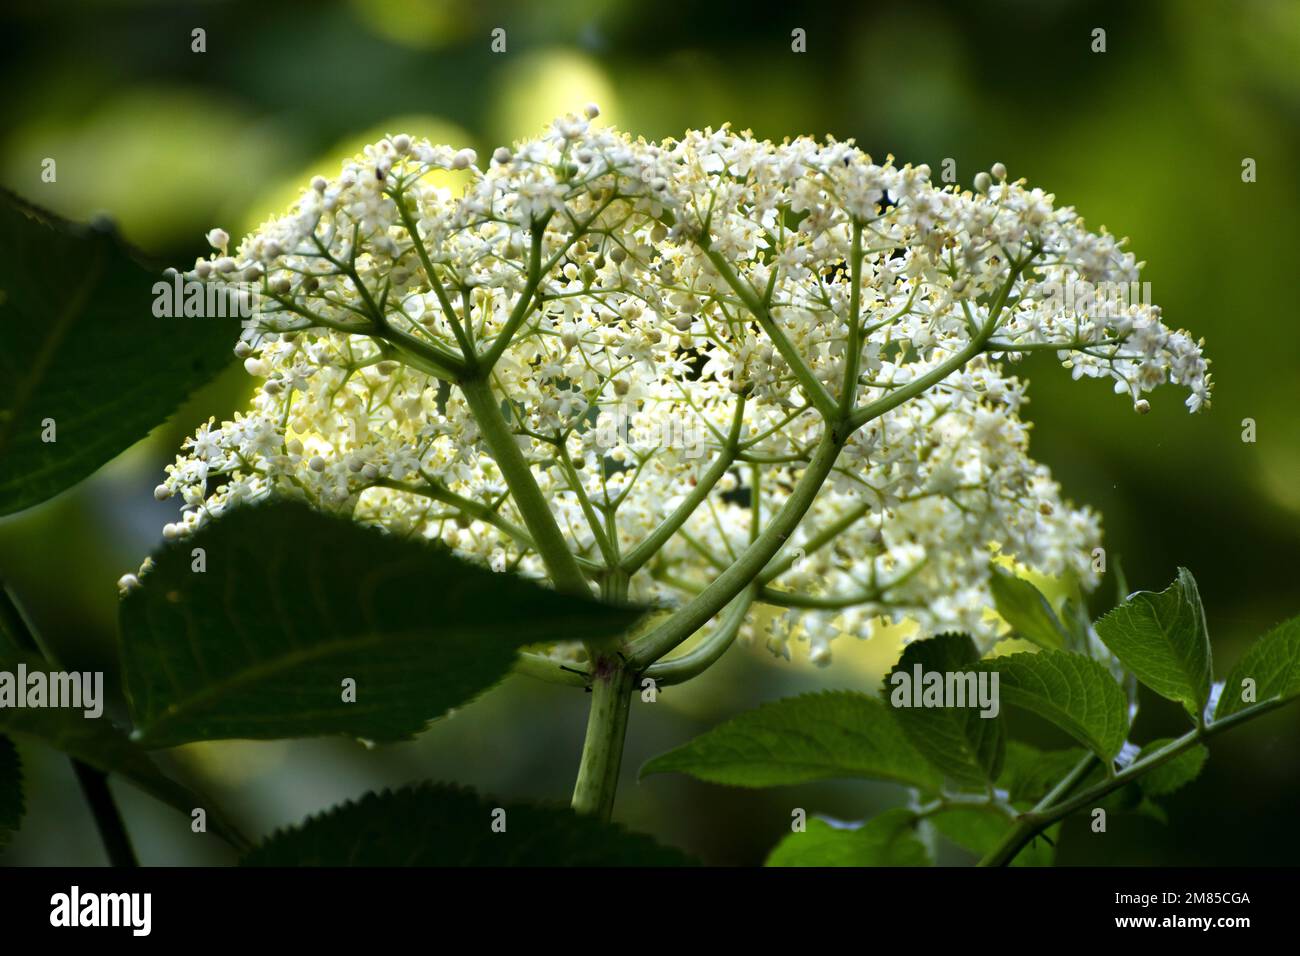 Elderberry flowers Stock Photo